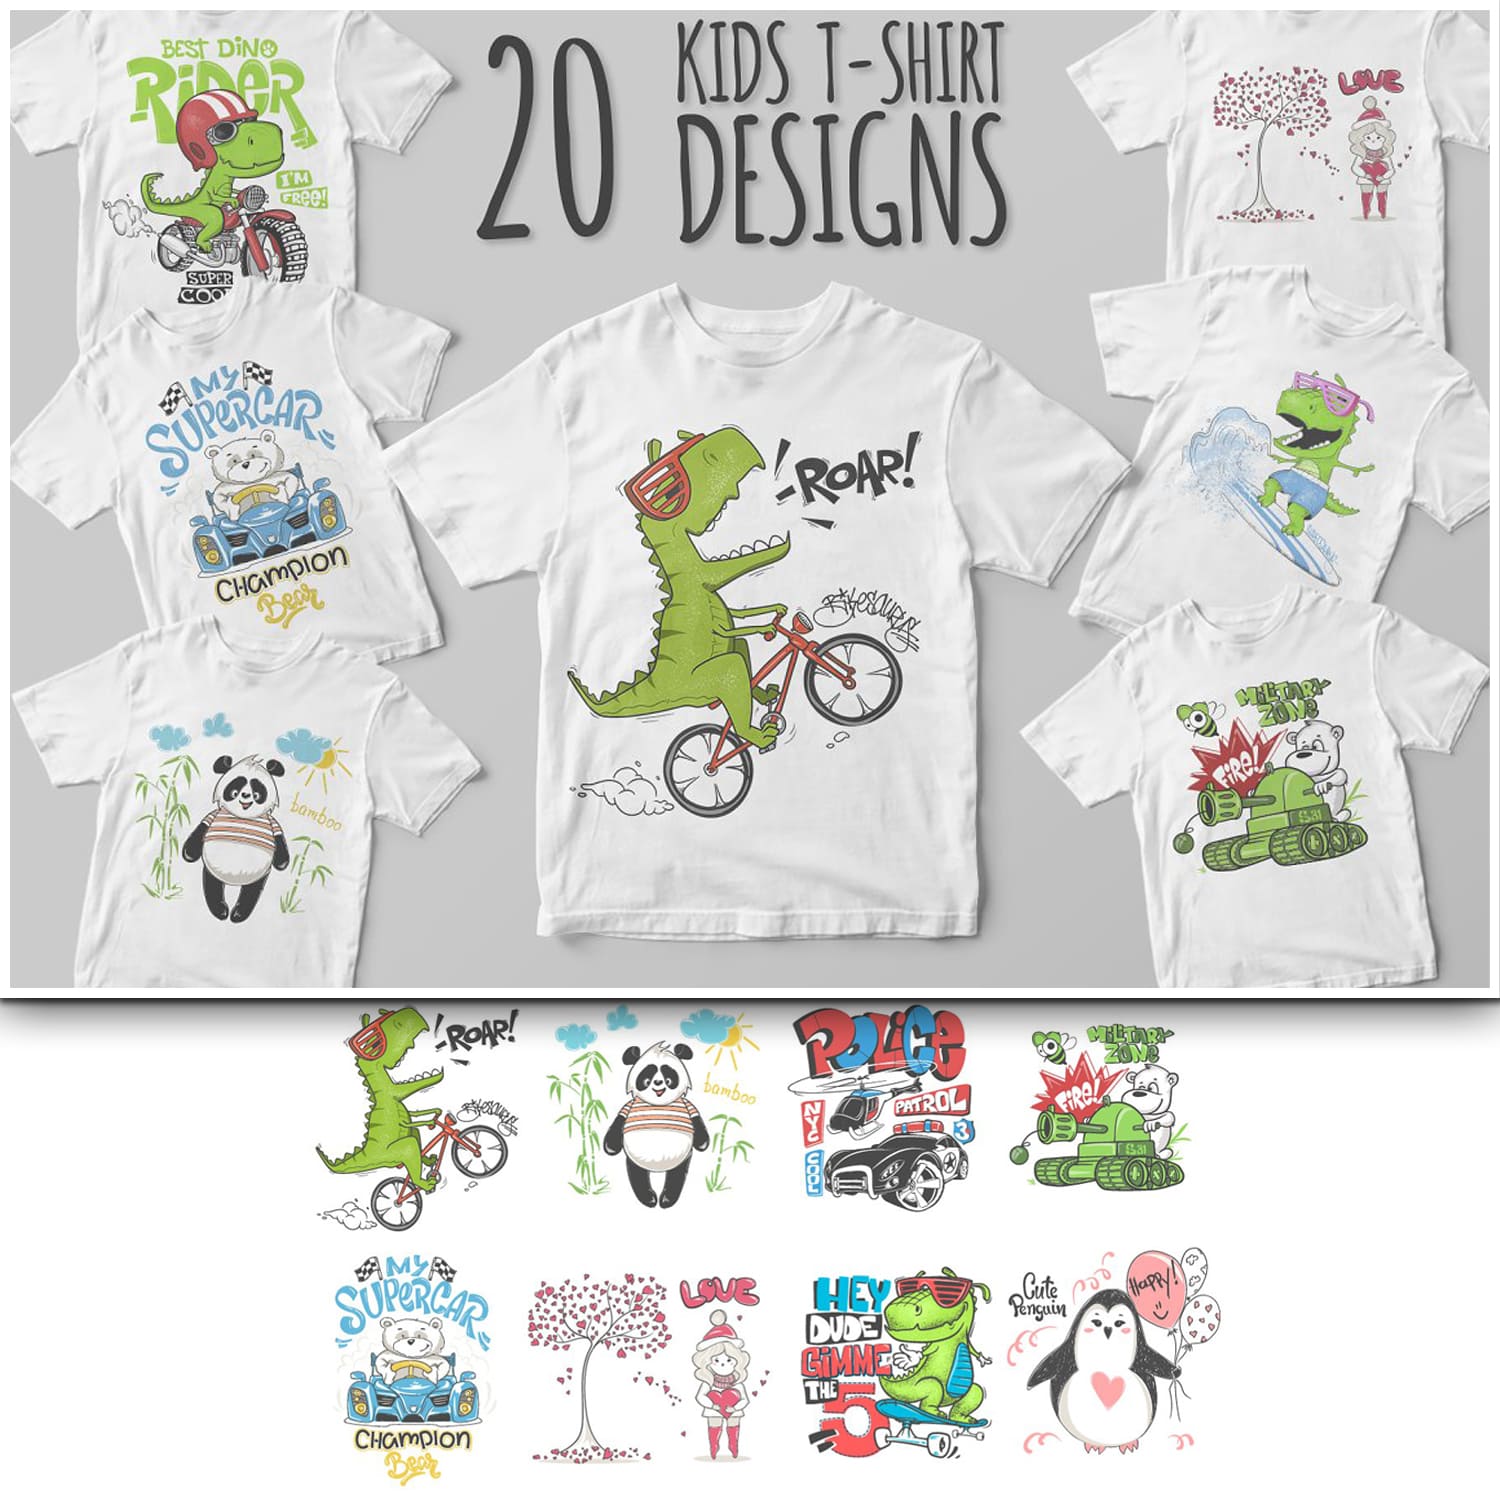 20 Kids T-Shirt Design.